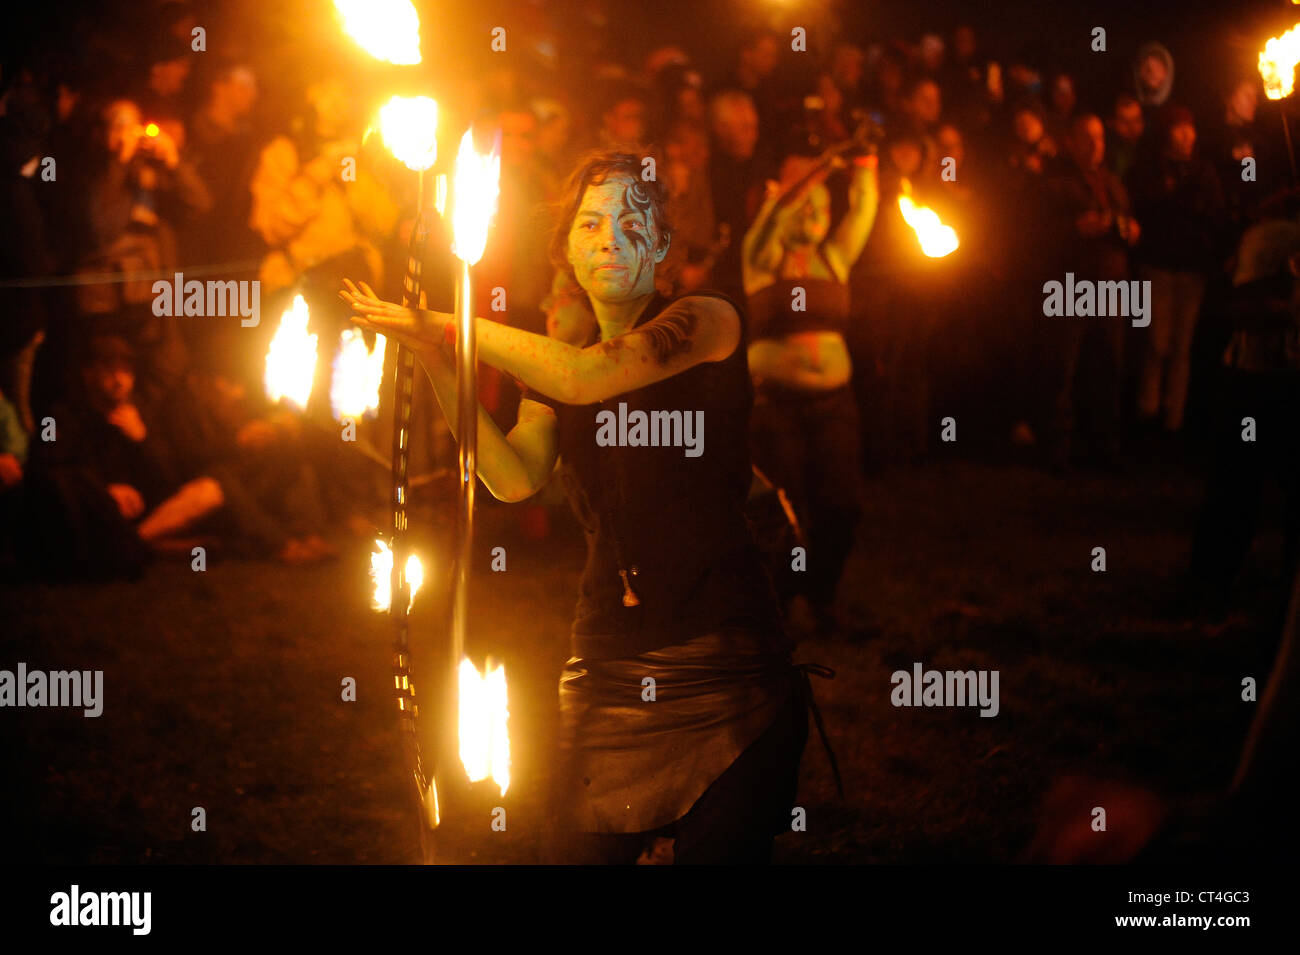 Les artistes interprètes ou exécutants participent au Festival annuel de Beltane Fire sur Calton Hill, Édimbourg, Écosse. Banque D'Images